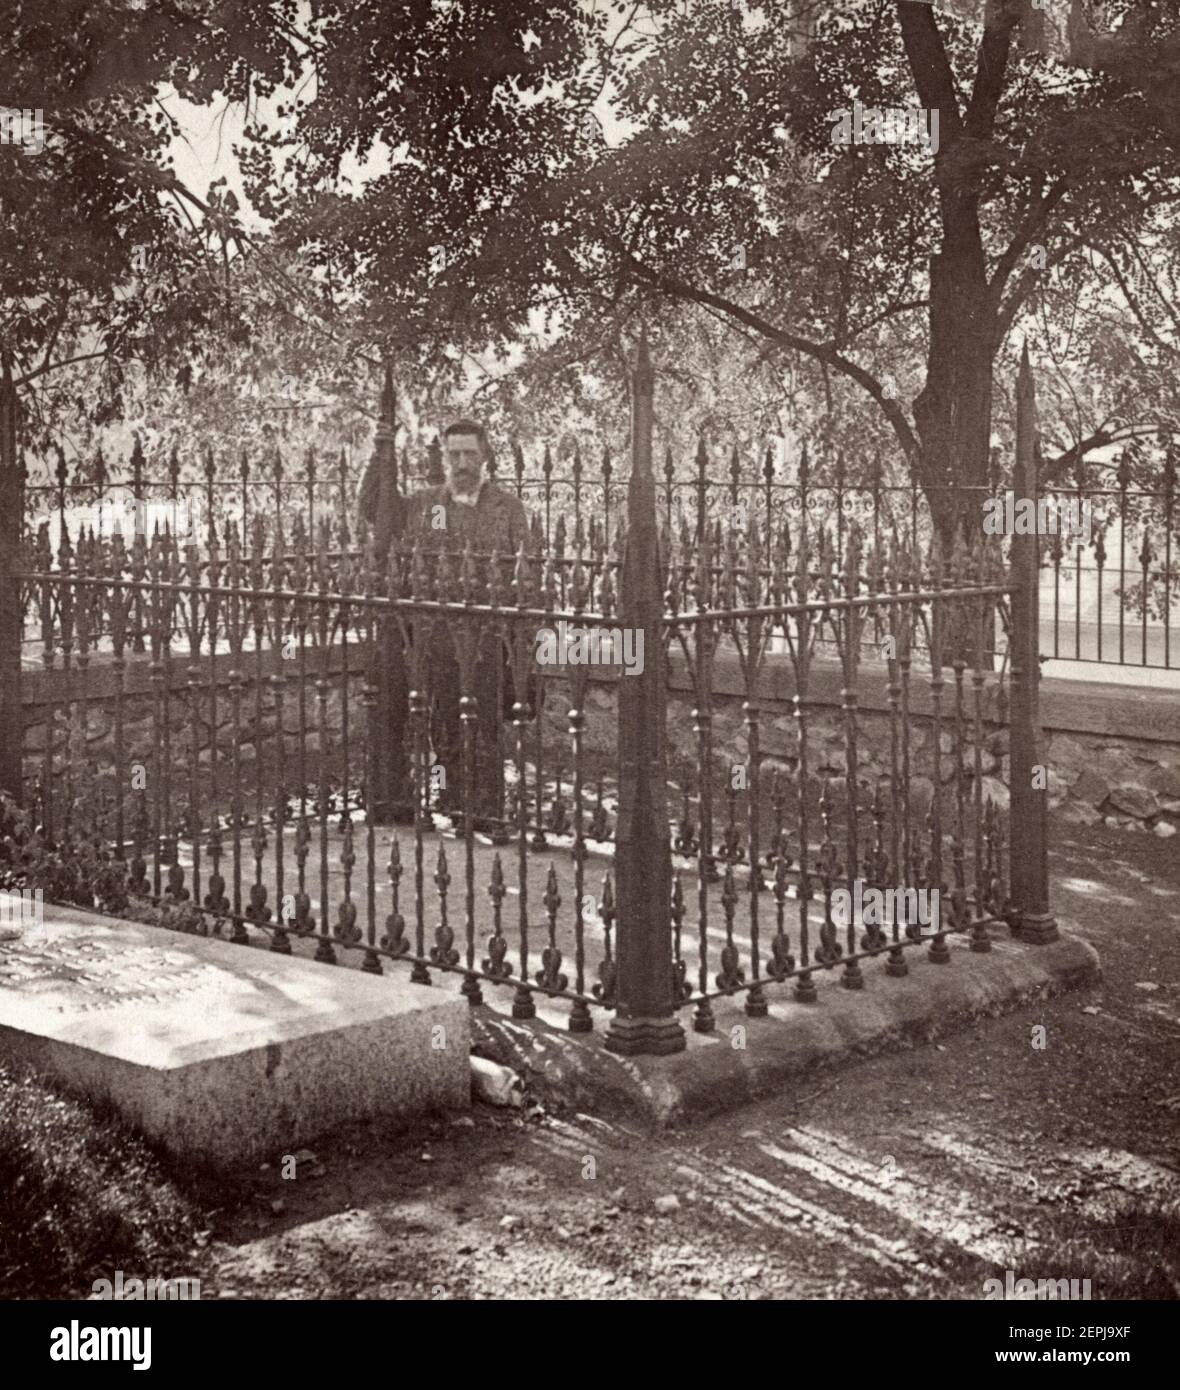 Grave of Brigham Young, Salt Lake City, Utah, 1904 Stock Photo